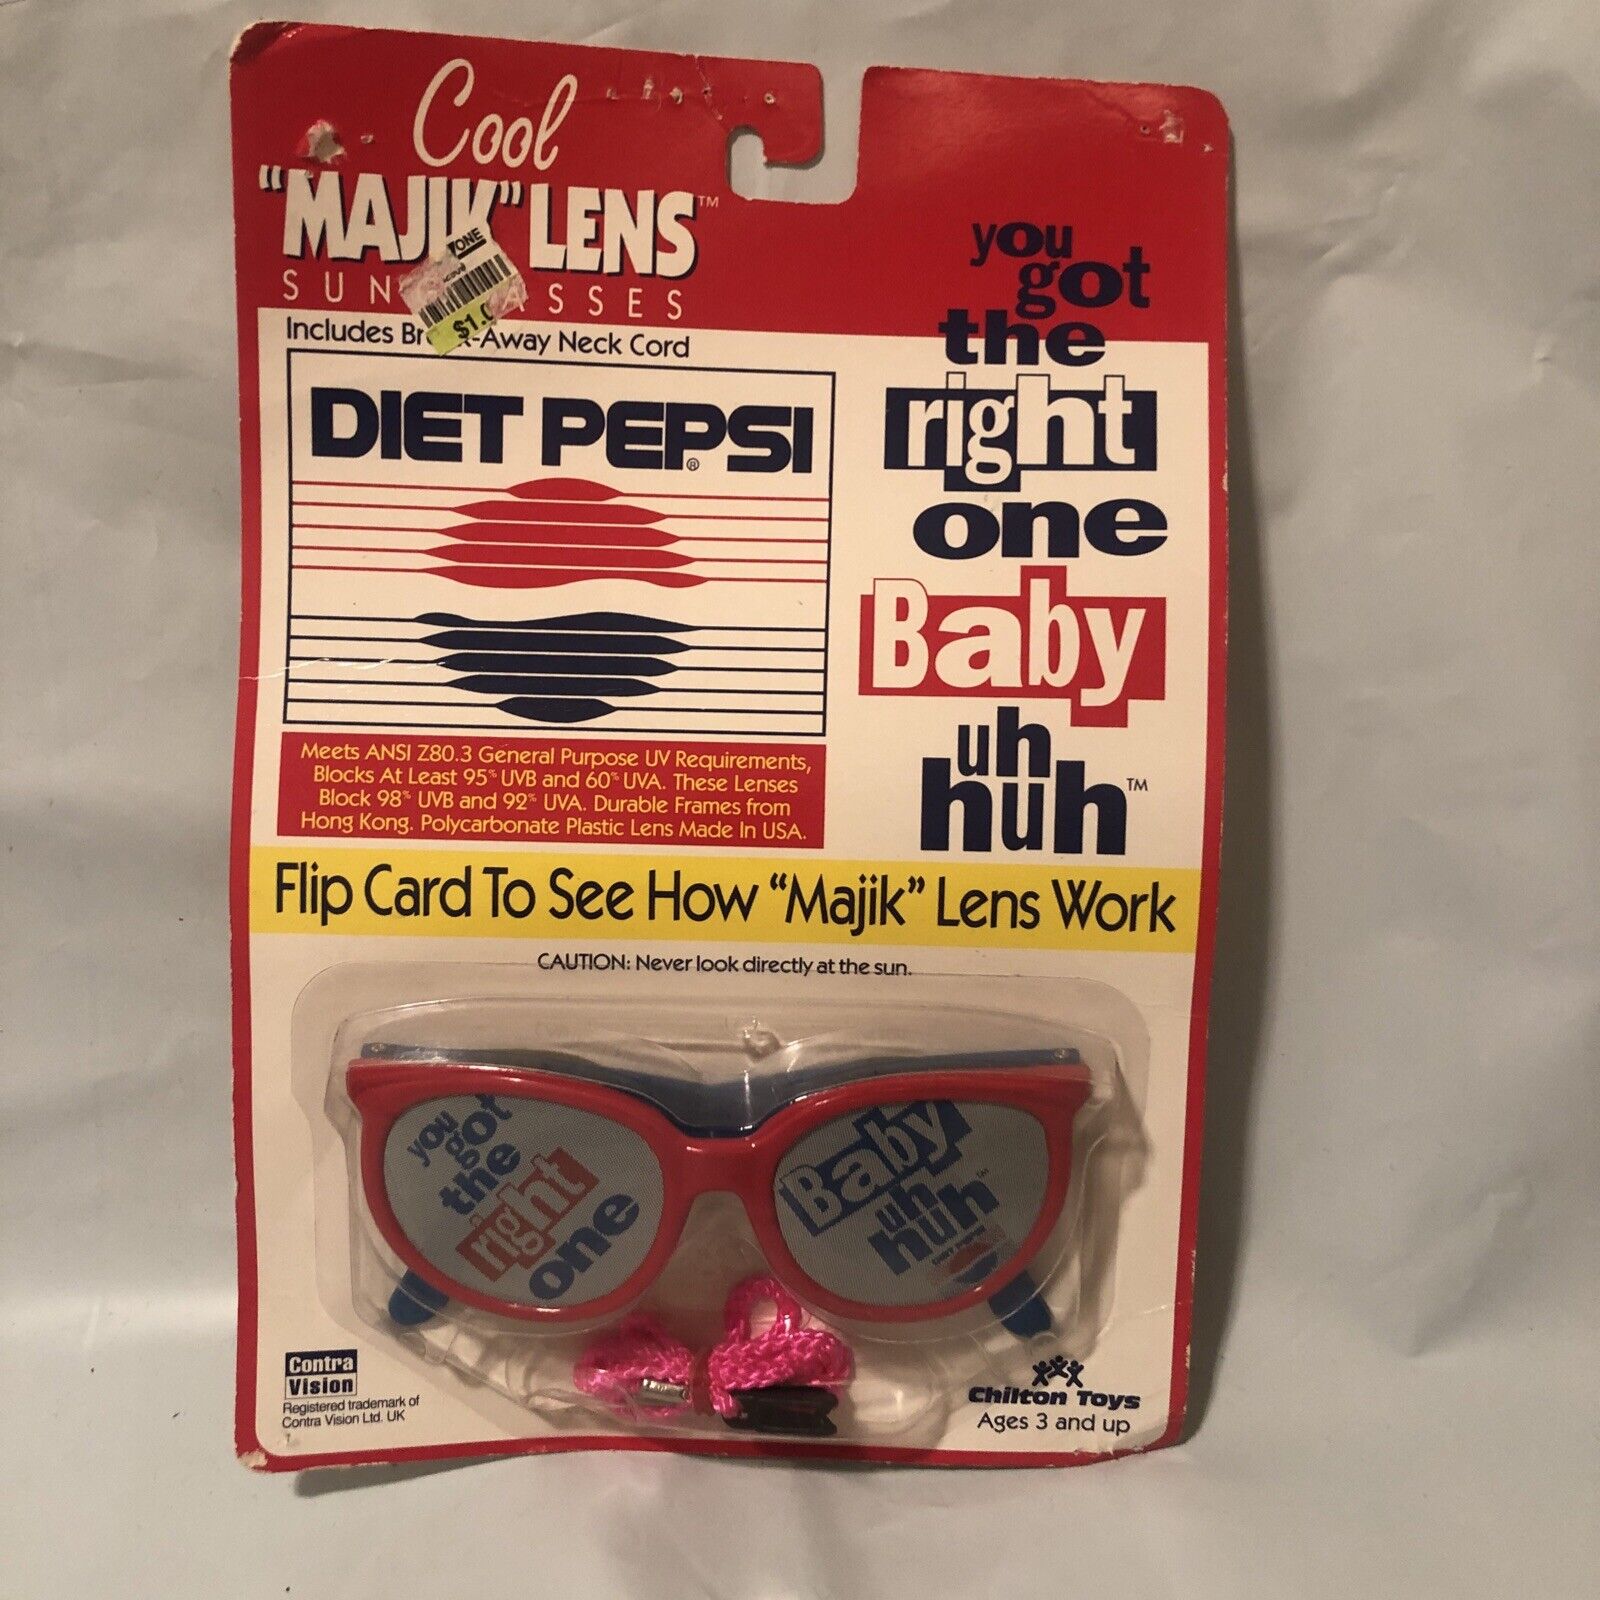 Diet Pepsi Cool MAJIK Lens Sunglasses Chilton Toys